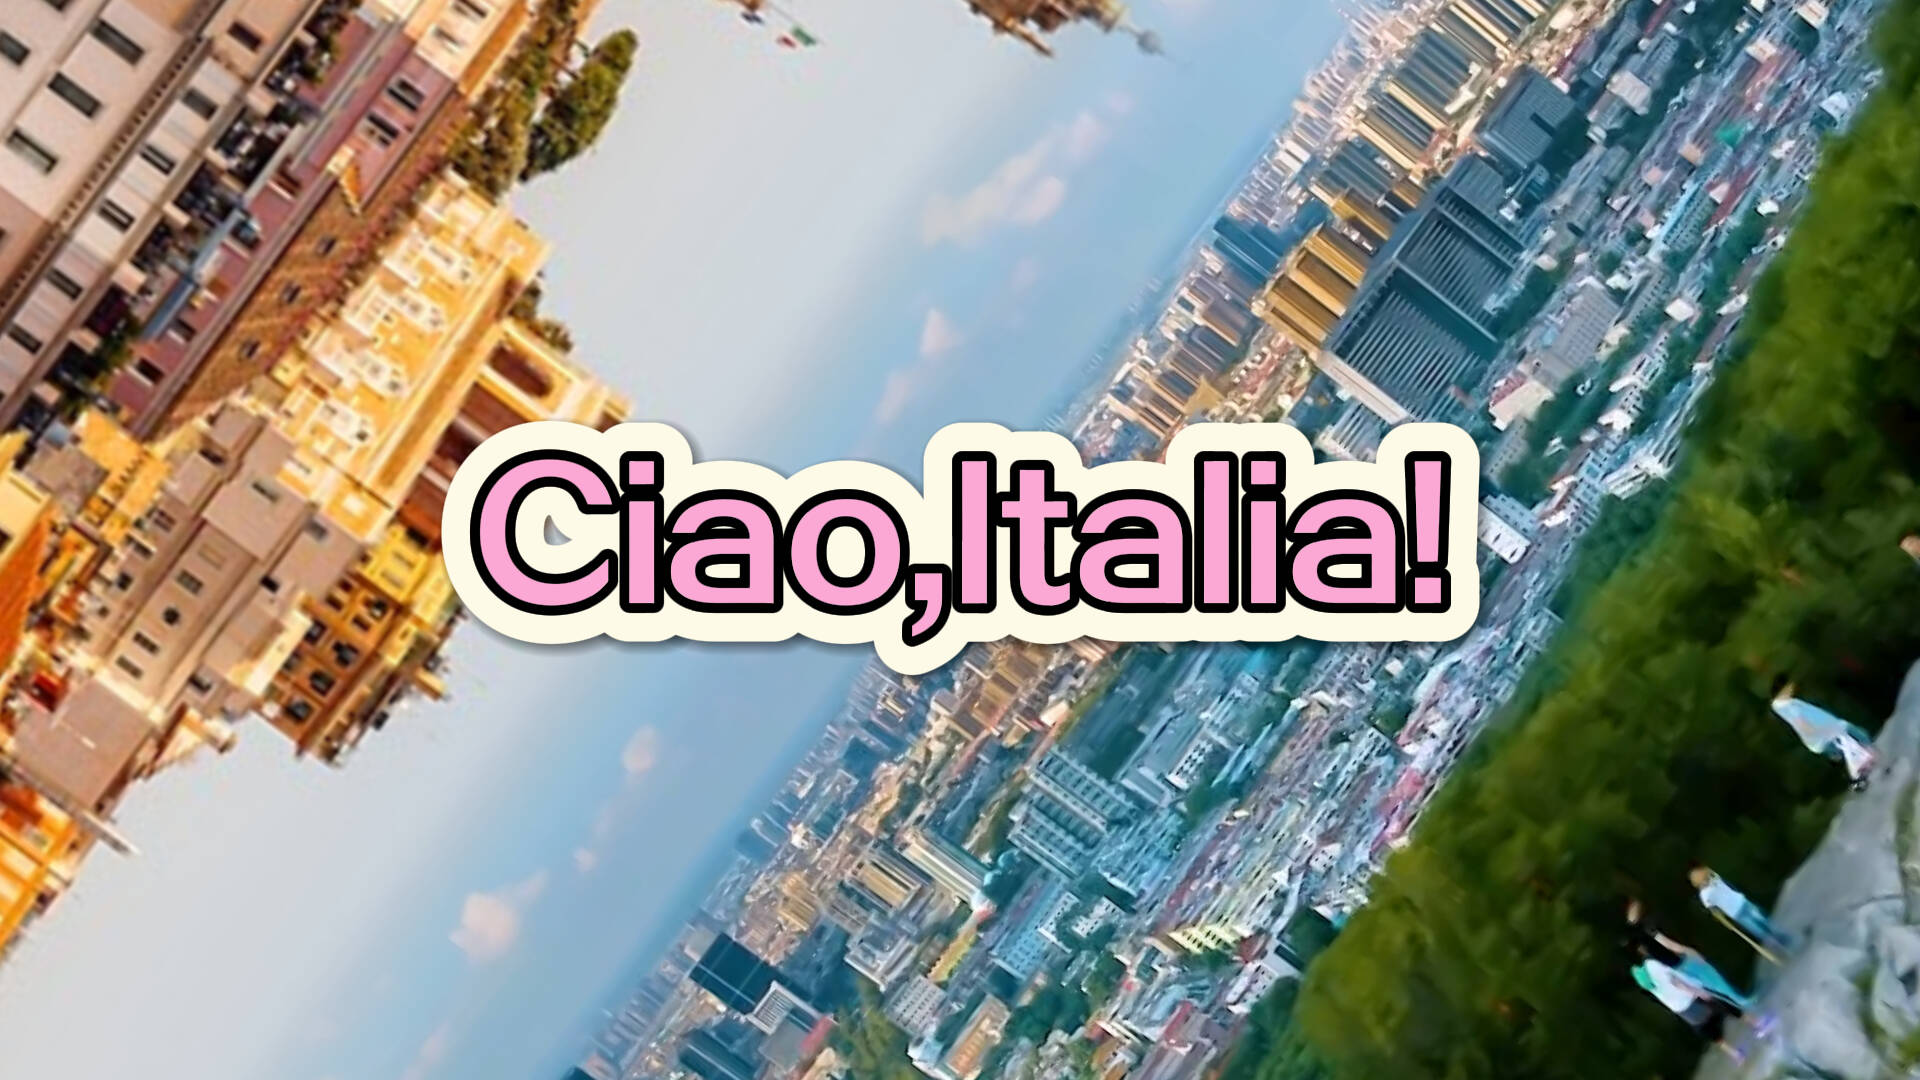 Ciao,Italia!